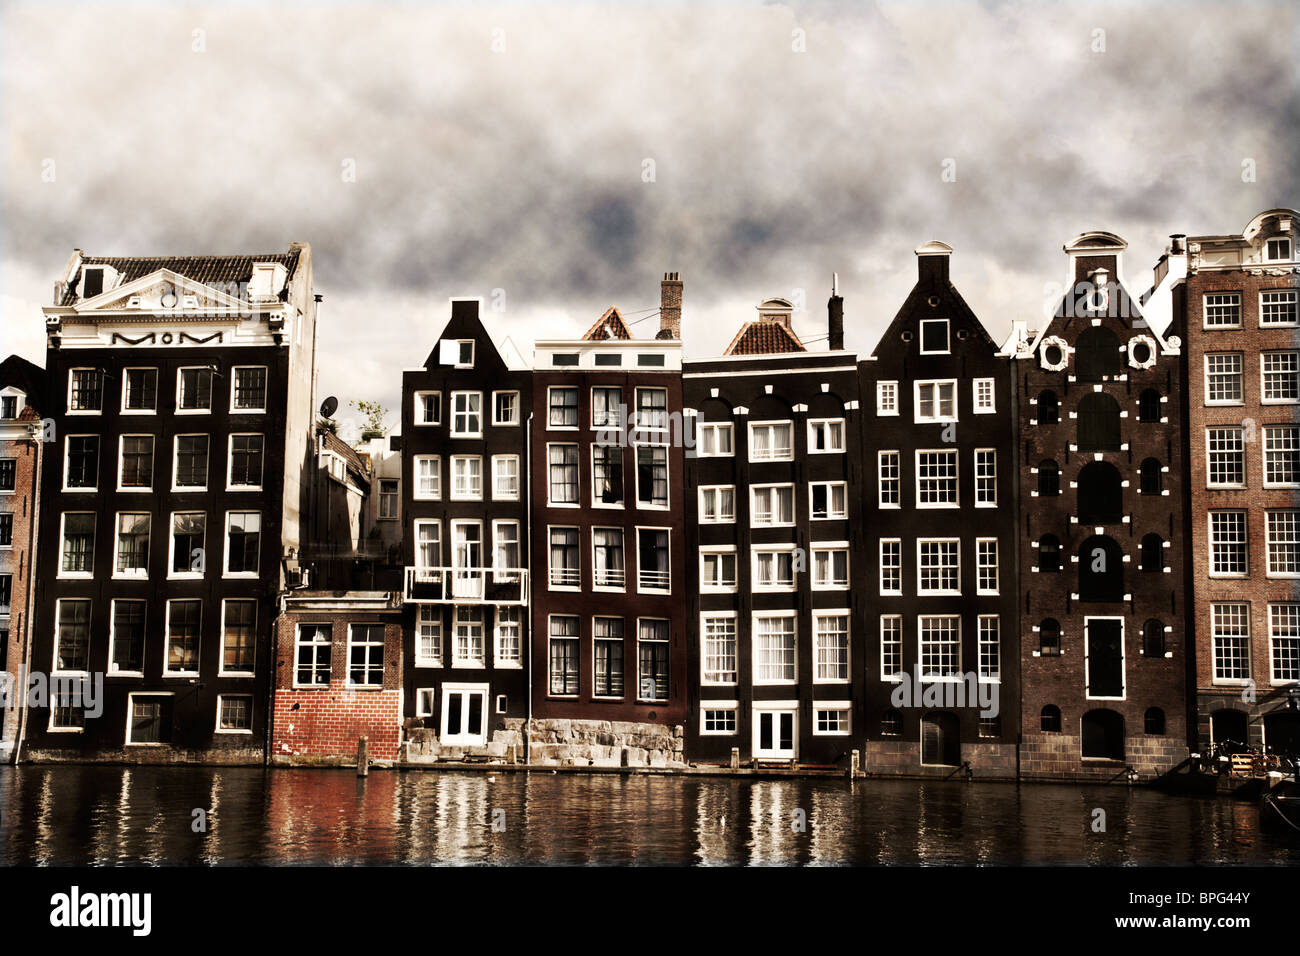 Maisons du canal d'Amsterdam, avec un look vintage sepia Banque D'Images